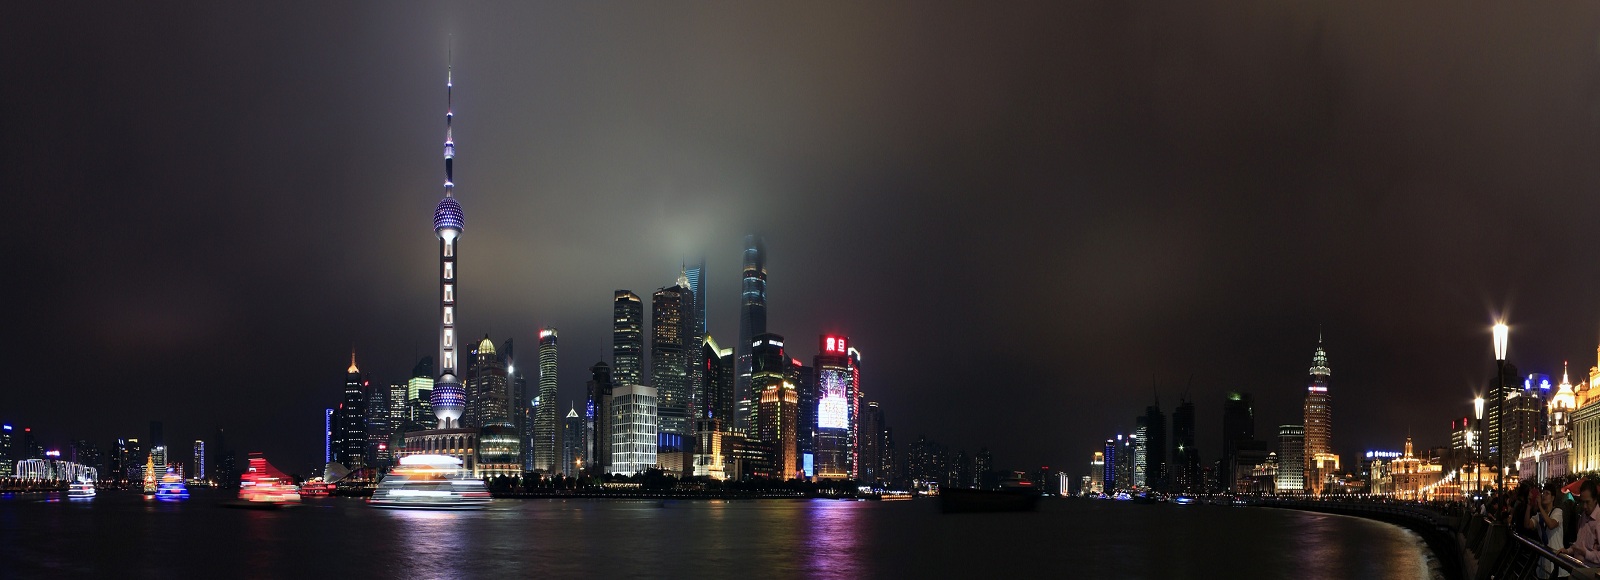 Ofertas de Traslados en Shanghai. Traslados económicos en Shanghai 